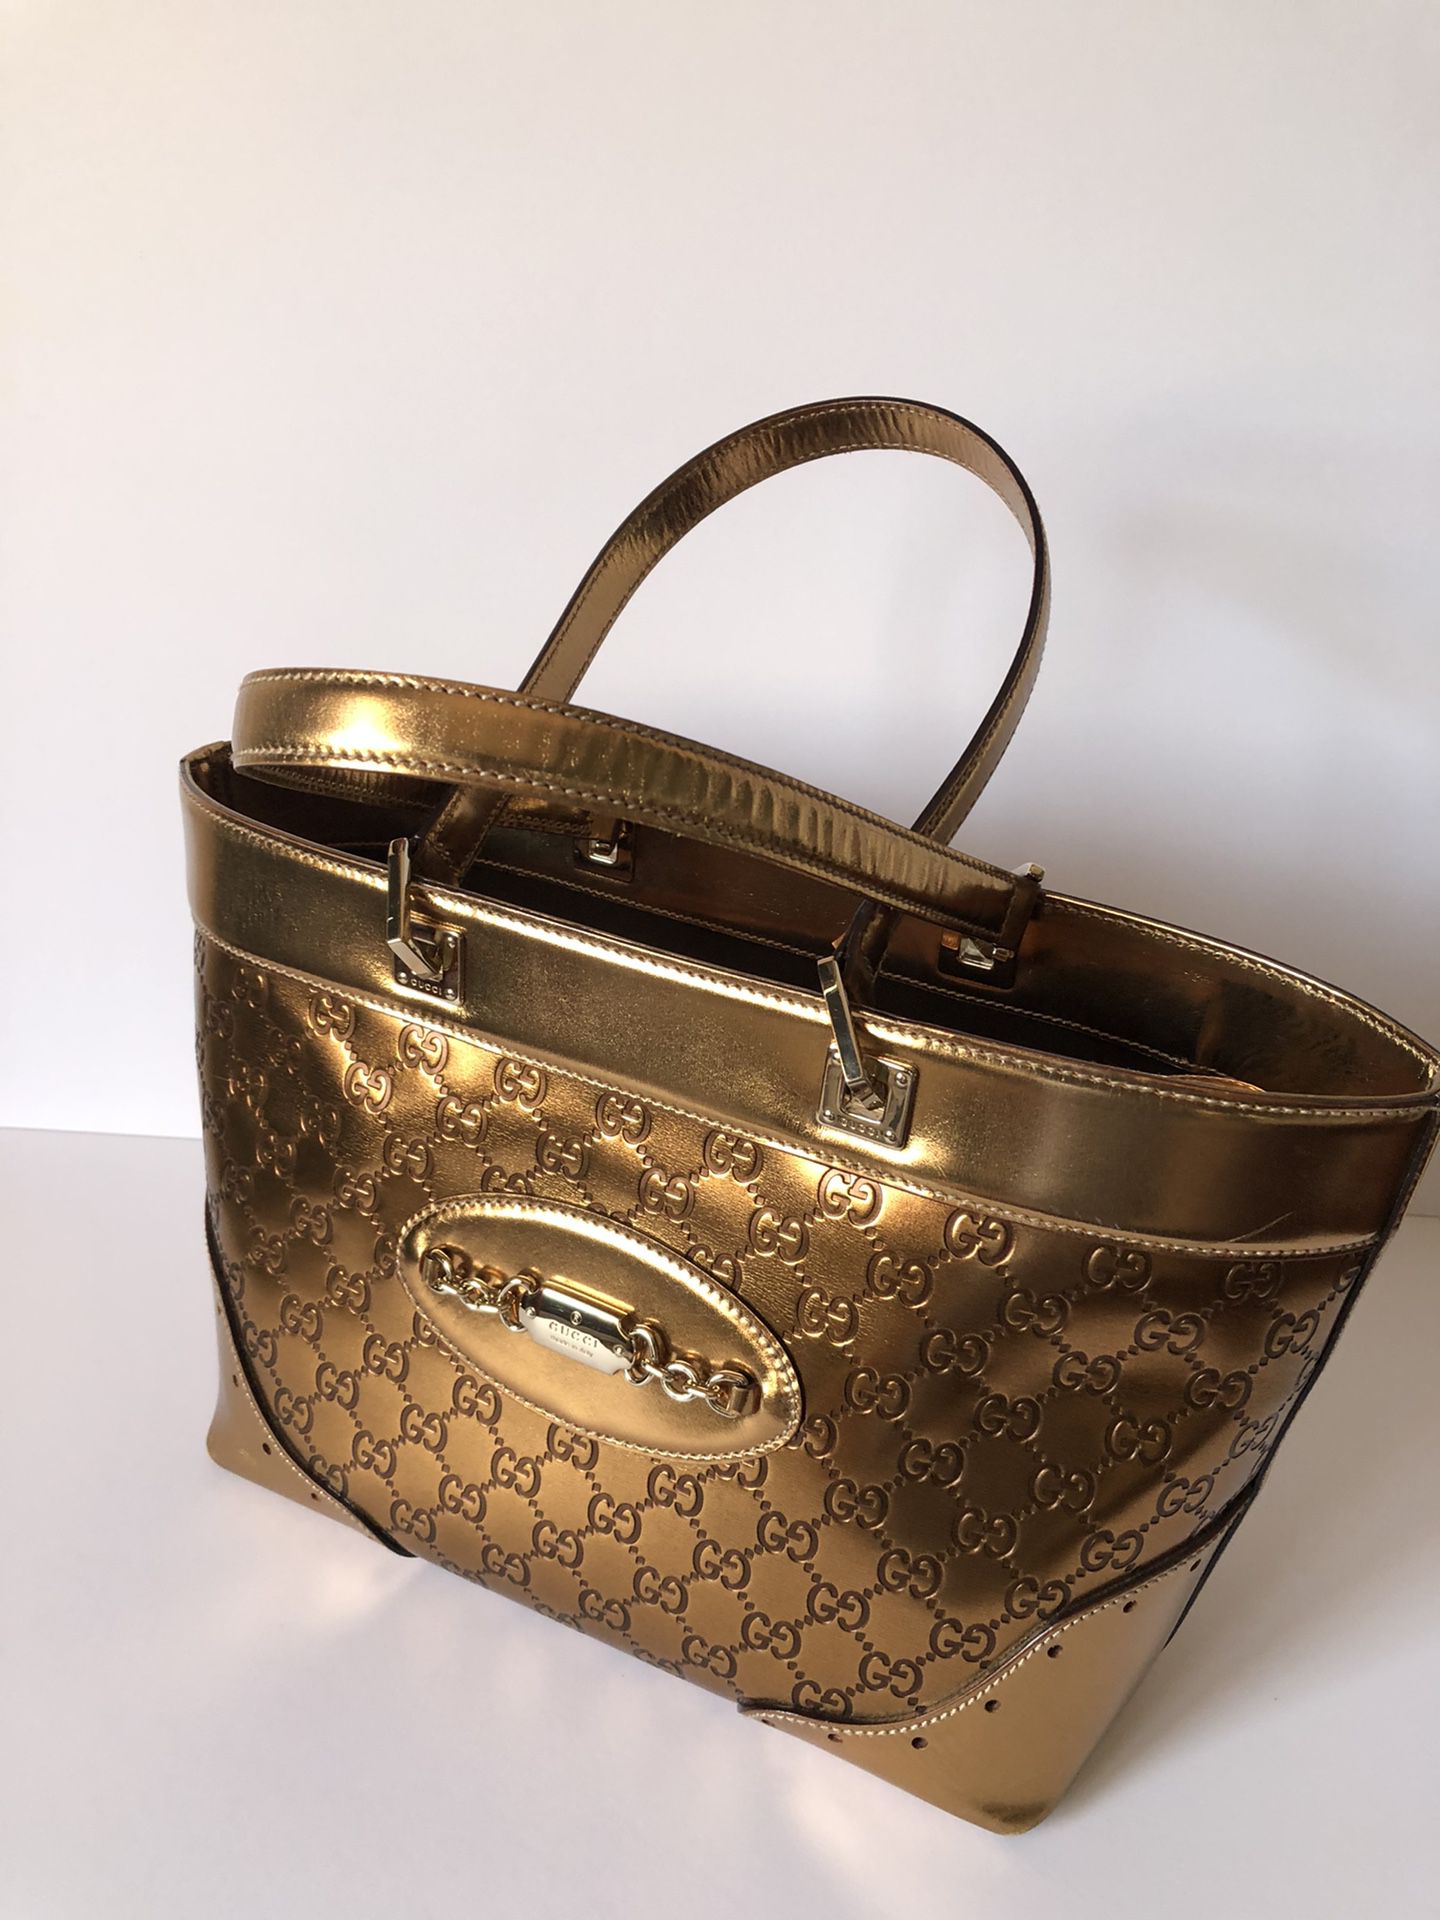 New Authentic Gucci metallic gold Guccissima tote bag